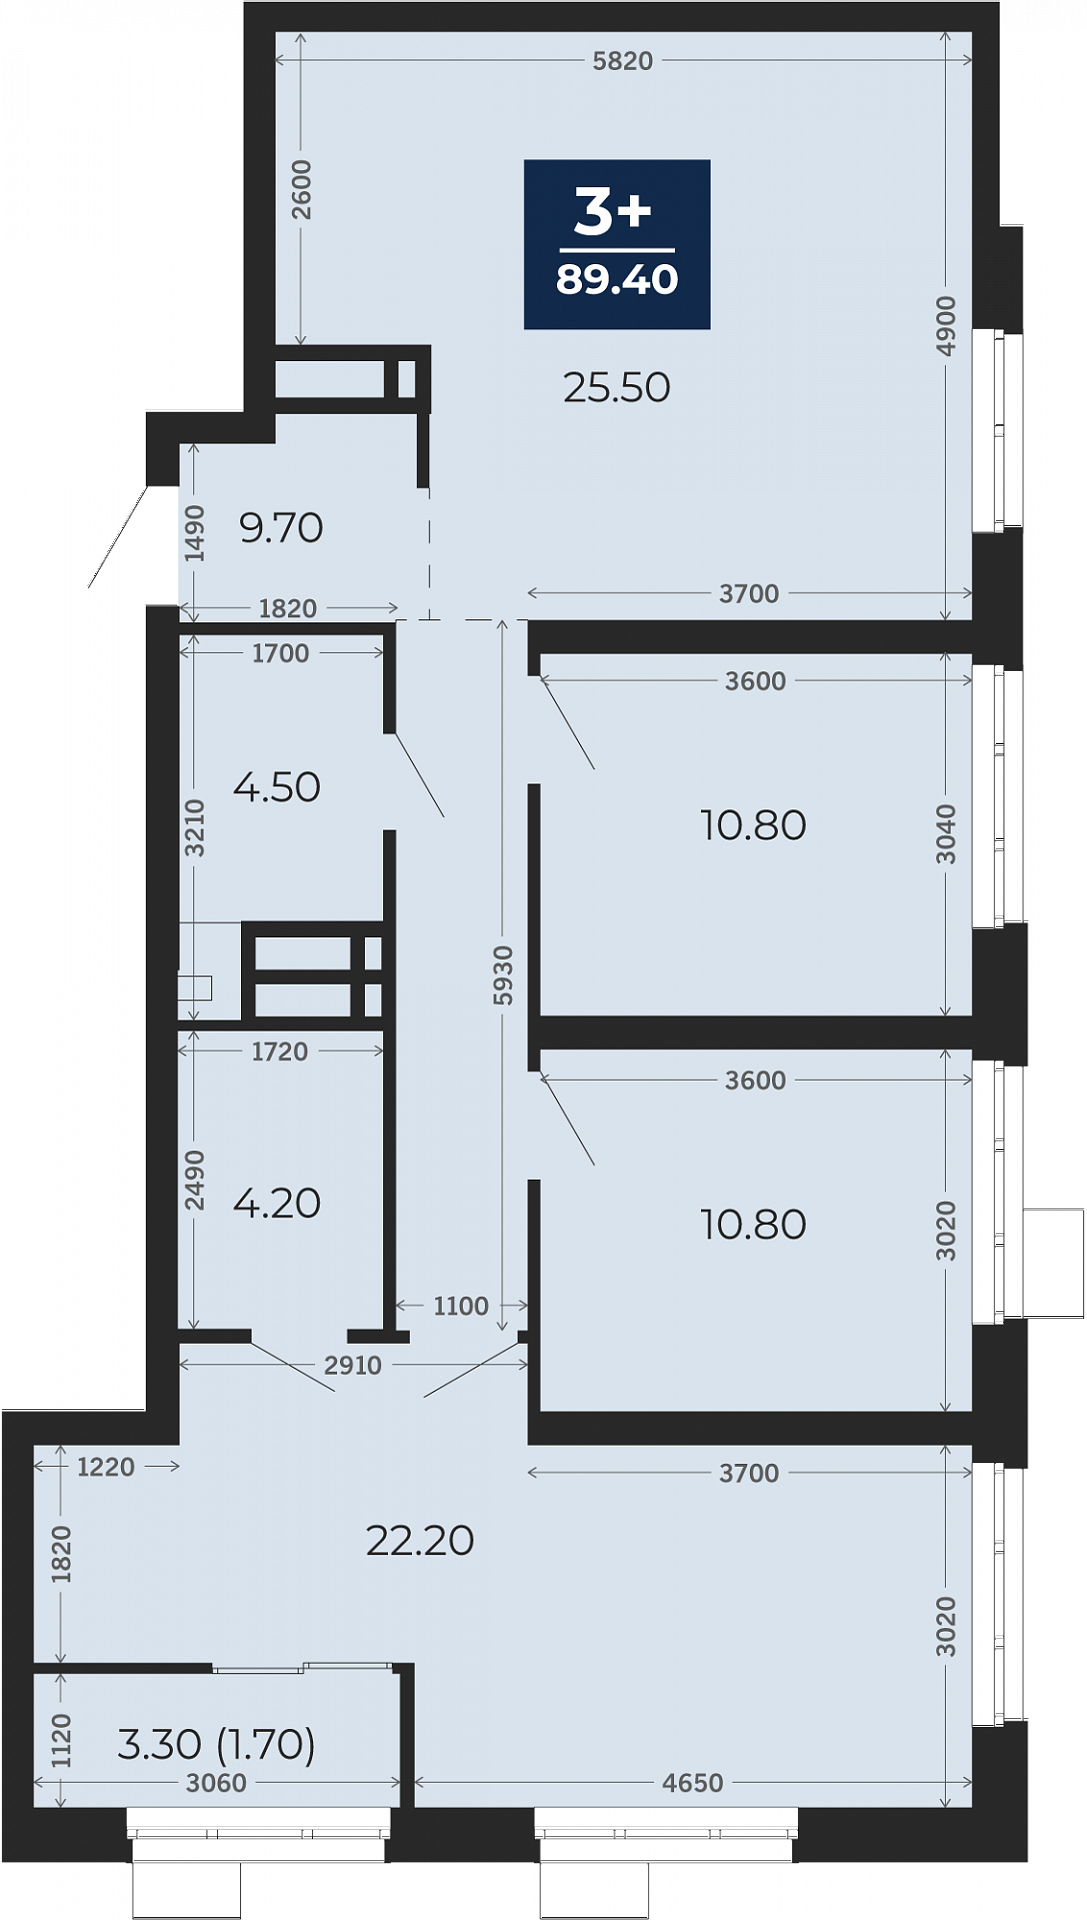 Квартира № 103, 3-комнатная, 89.4 кв. м, 3 этаж